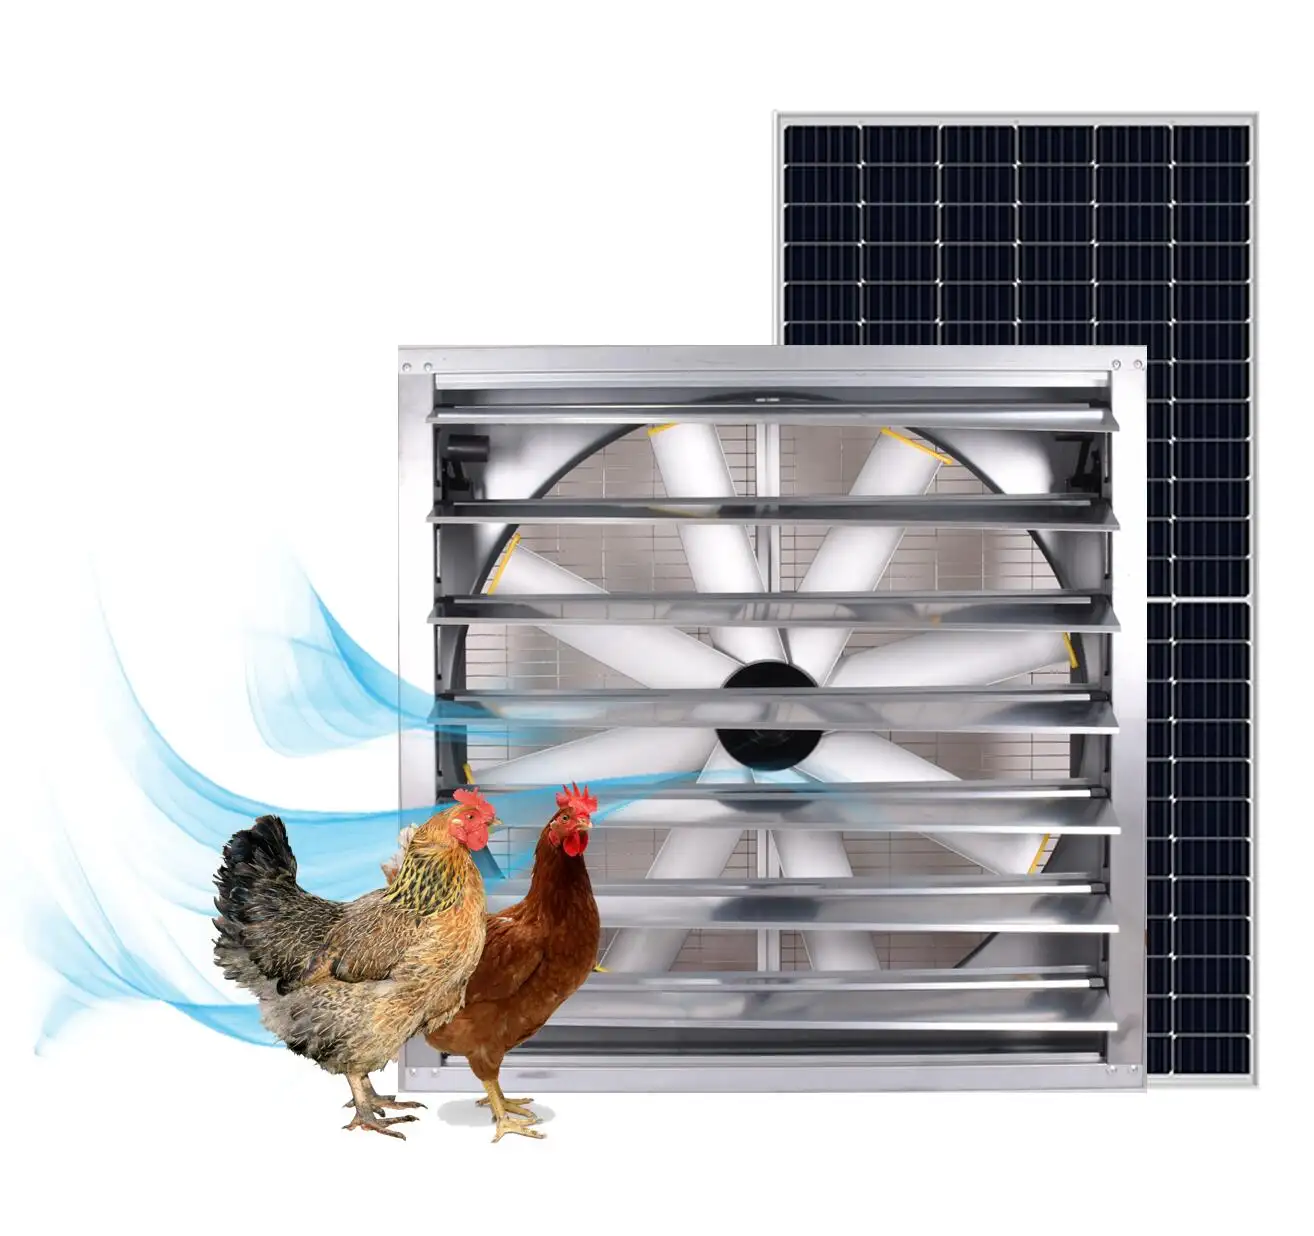 poultry farm fan 440W 48 inch large solar powered ventilation fans for dairy chicken pig farm fan